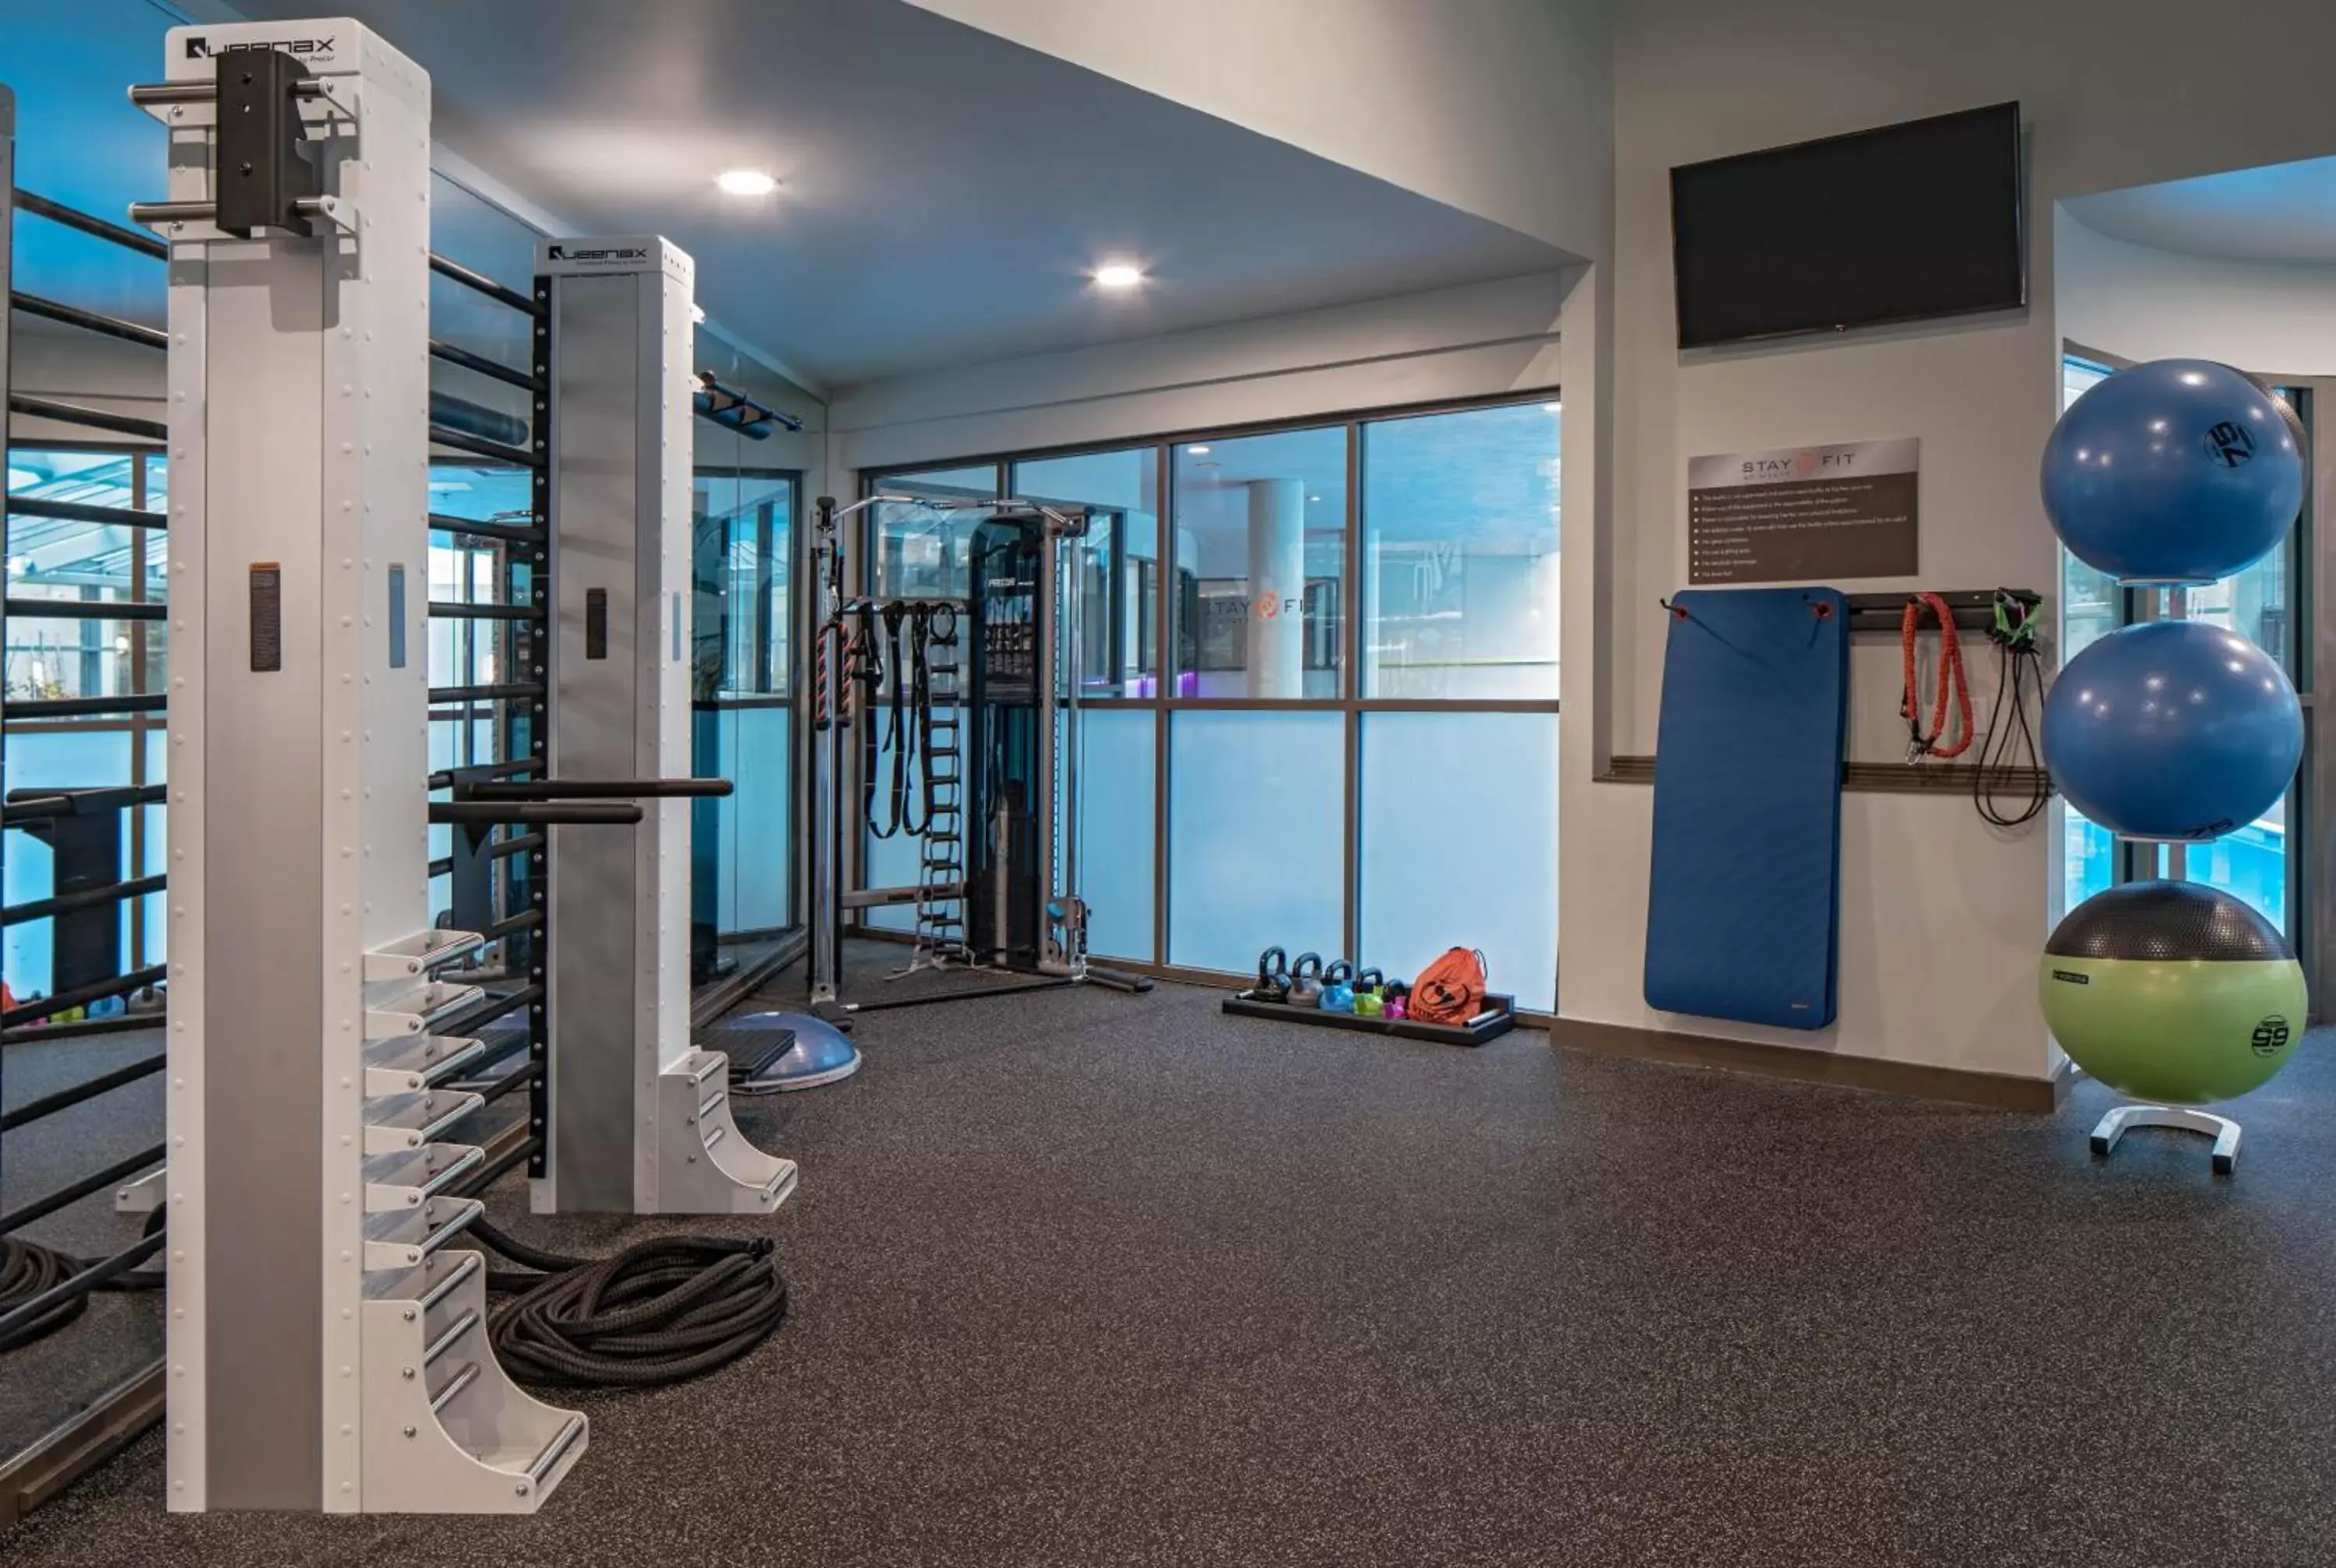 Fitness centre/facilities, Fitness Center/Facilities in Hyatt Regency Denver Tech Center